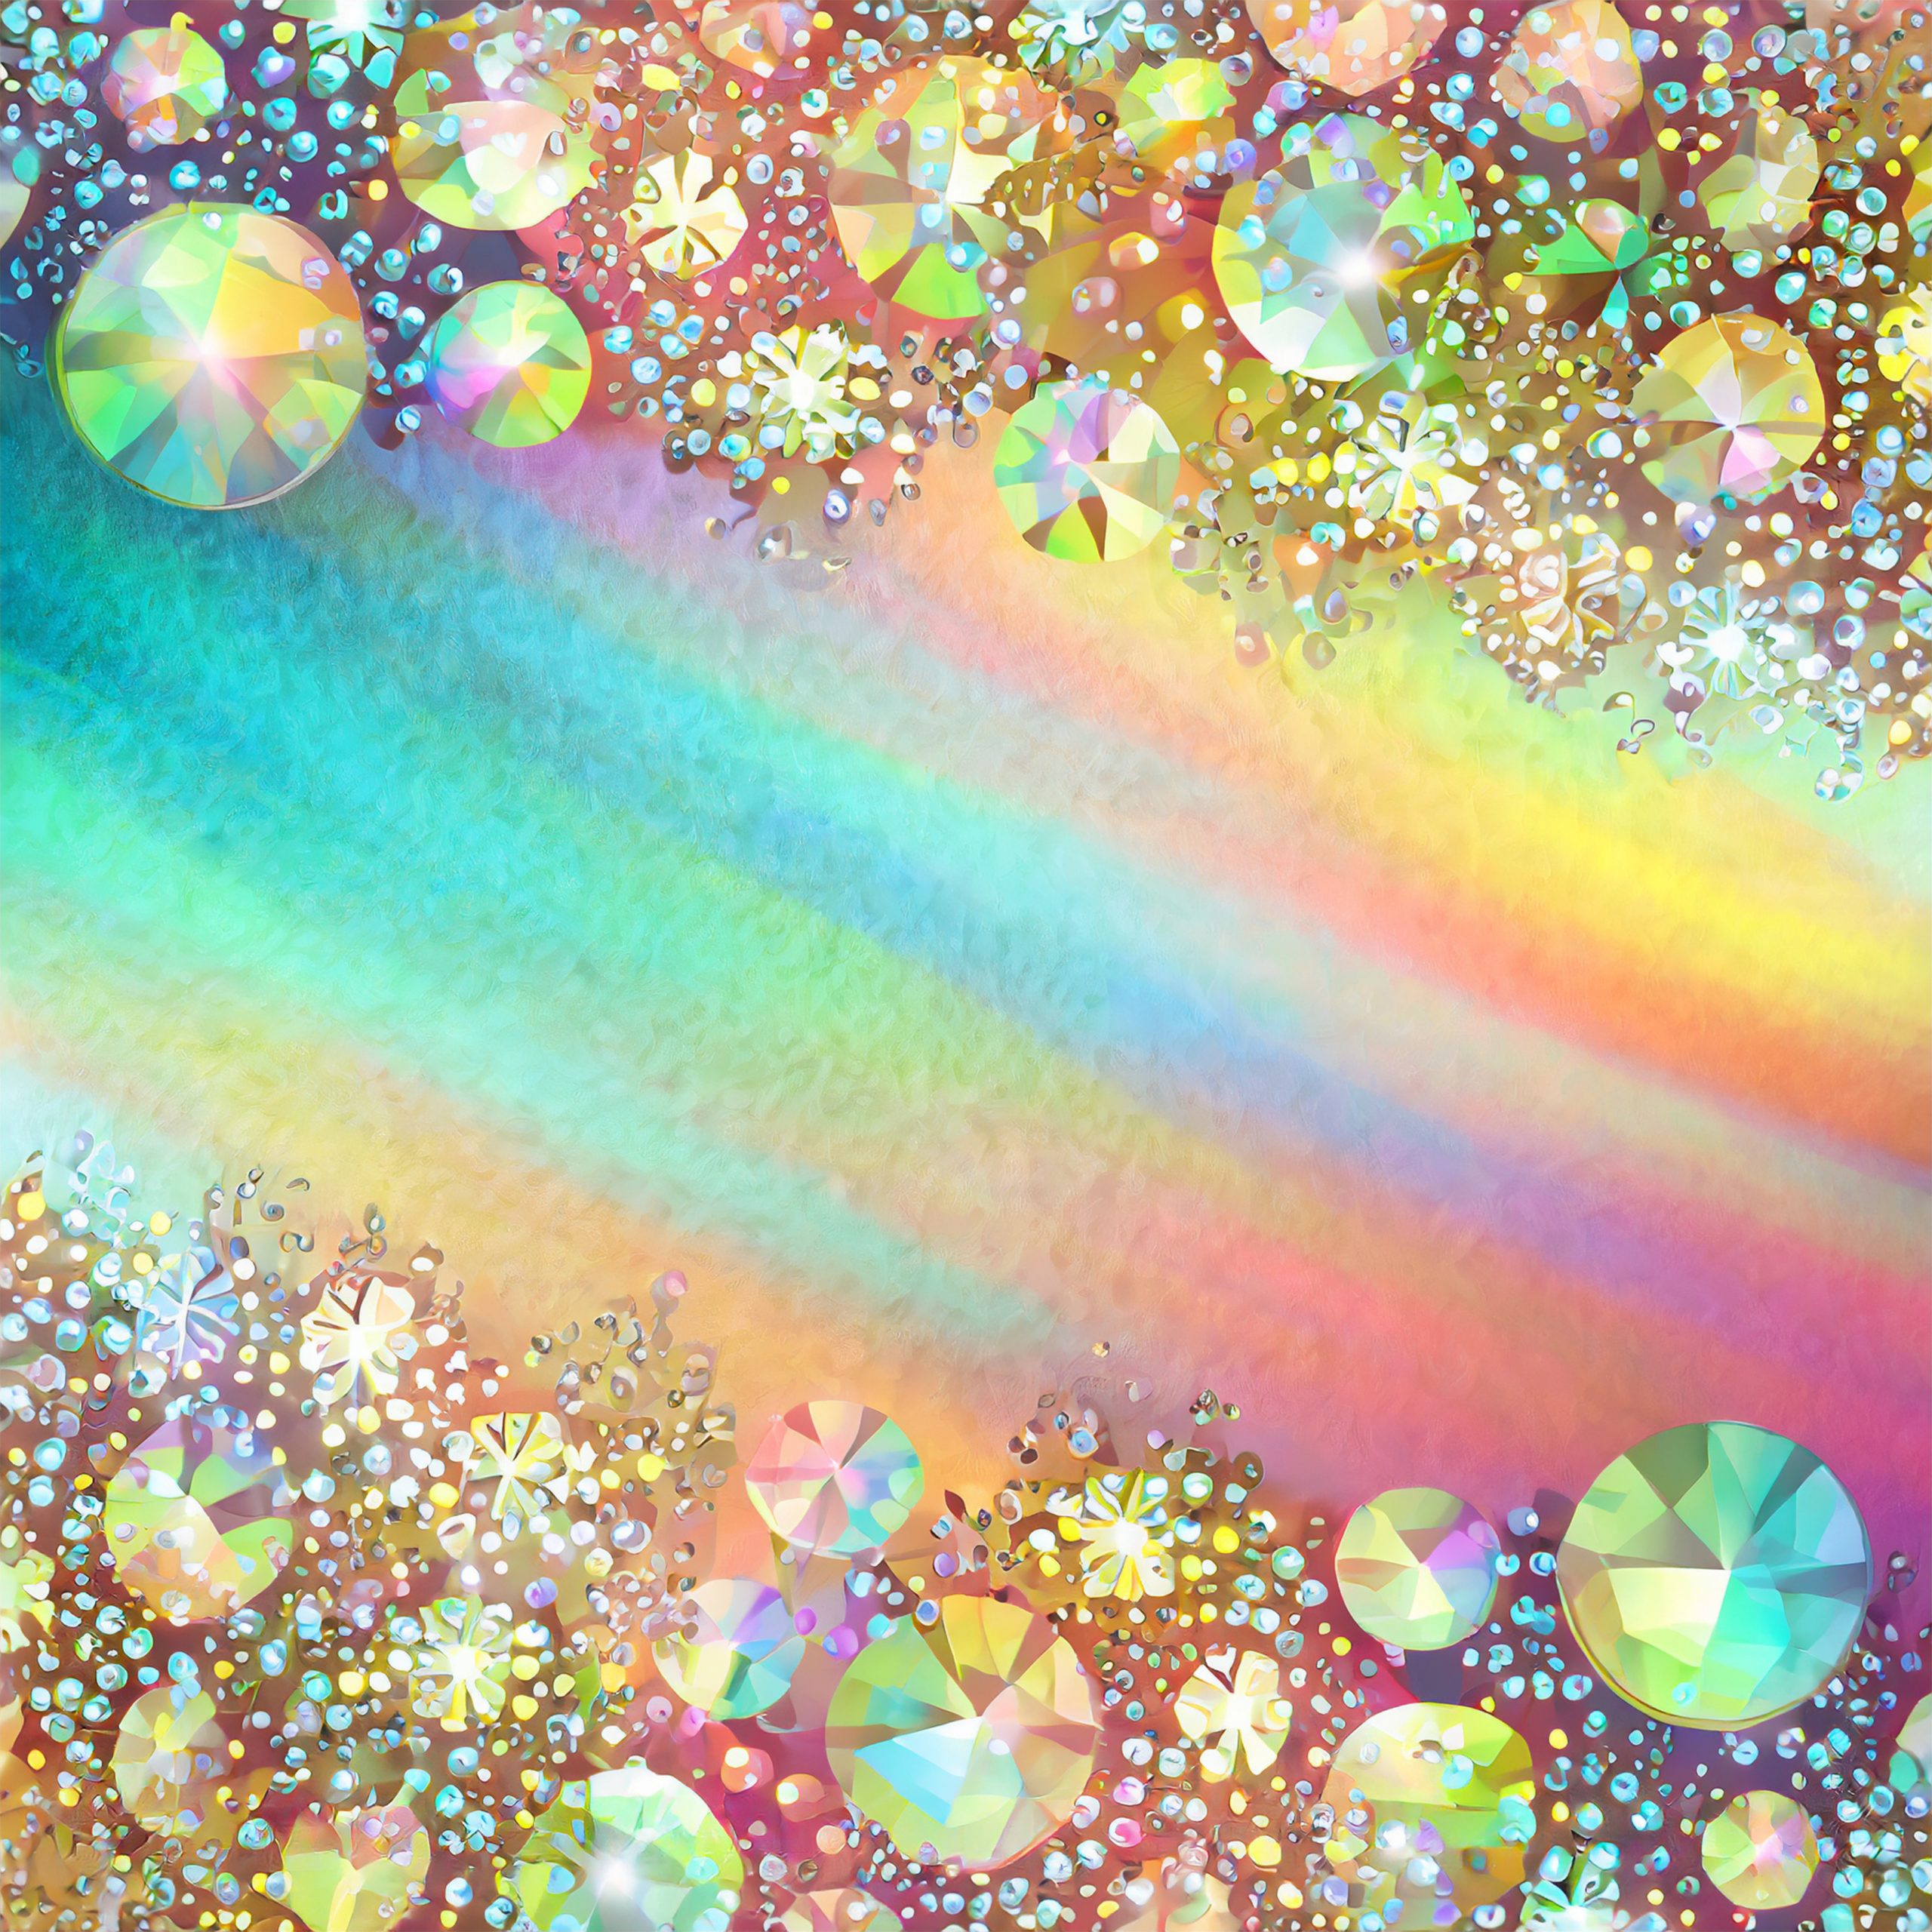 Fondo difuminado de colores iridiscentes decorado con grandes piedras preciosas de colores y cristales brillantes